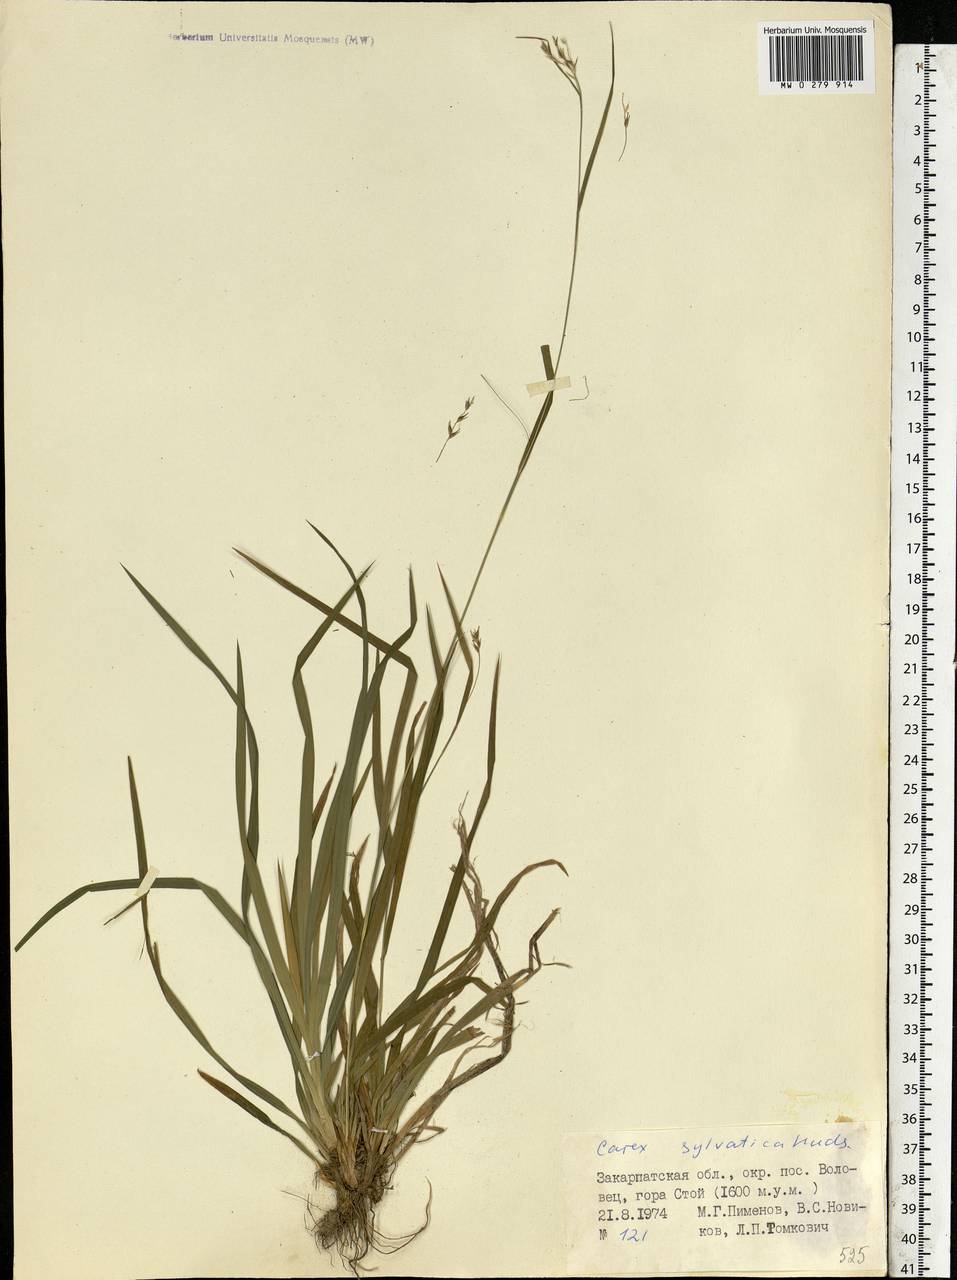 Carex sylvatica Huds., Eastern Europe, West Ukrainian region (E13) (Ukraine)